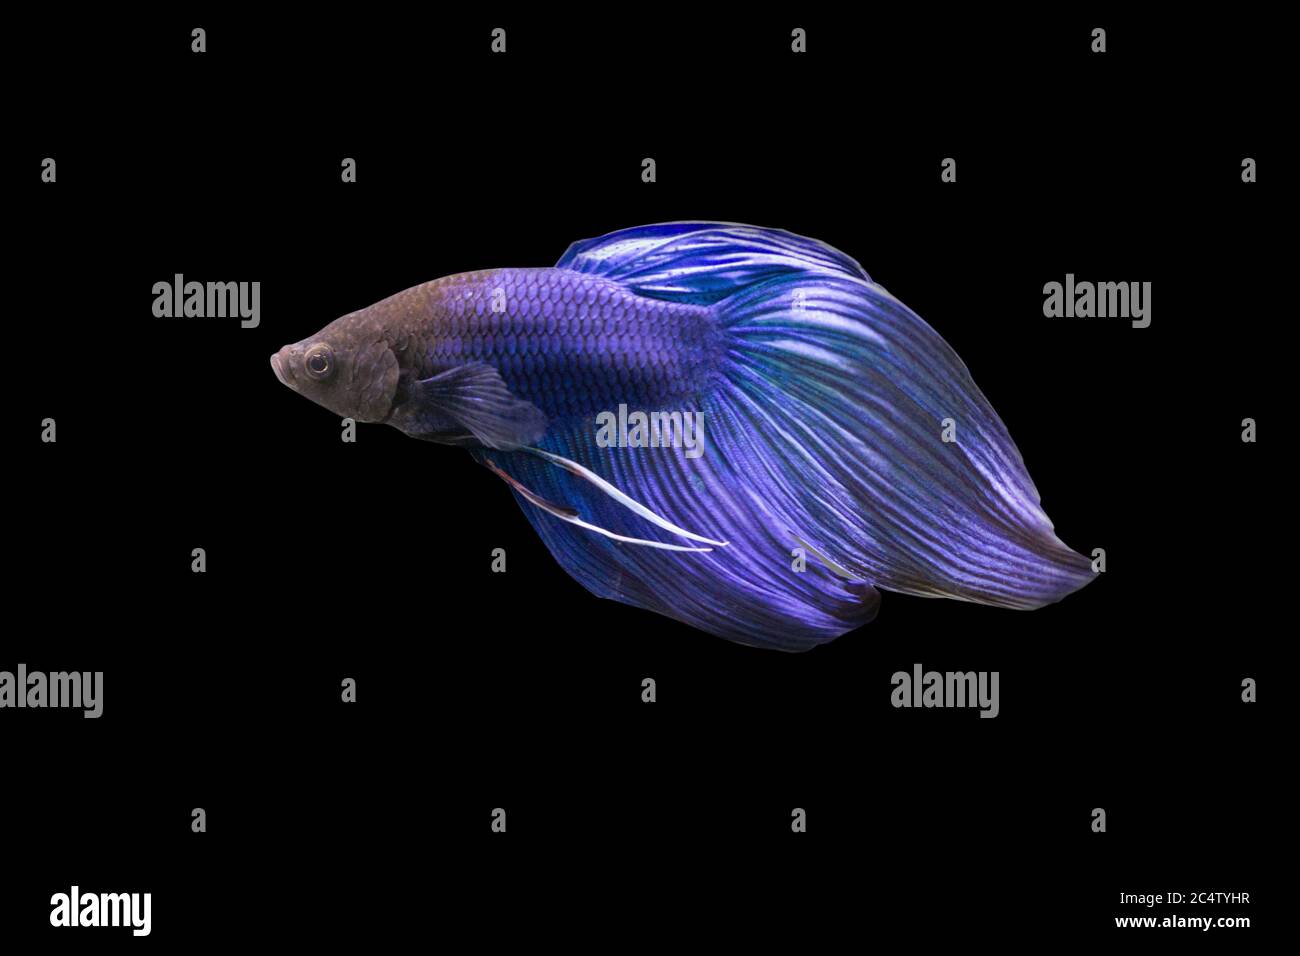 Betta Blue  Veiltail VT Male or Plakat Fighting Fish Splendens on Black Background. Stock Photo